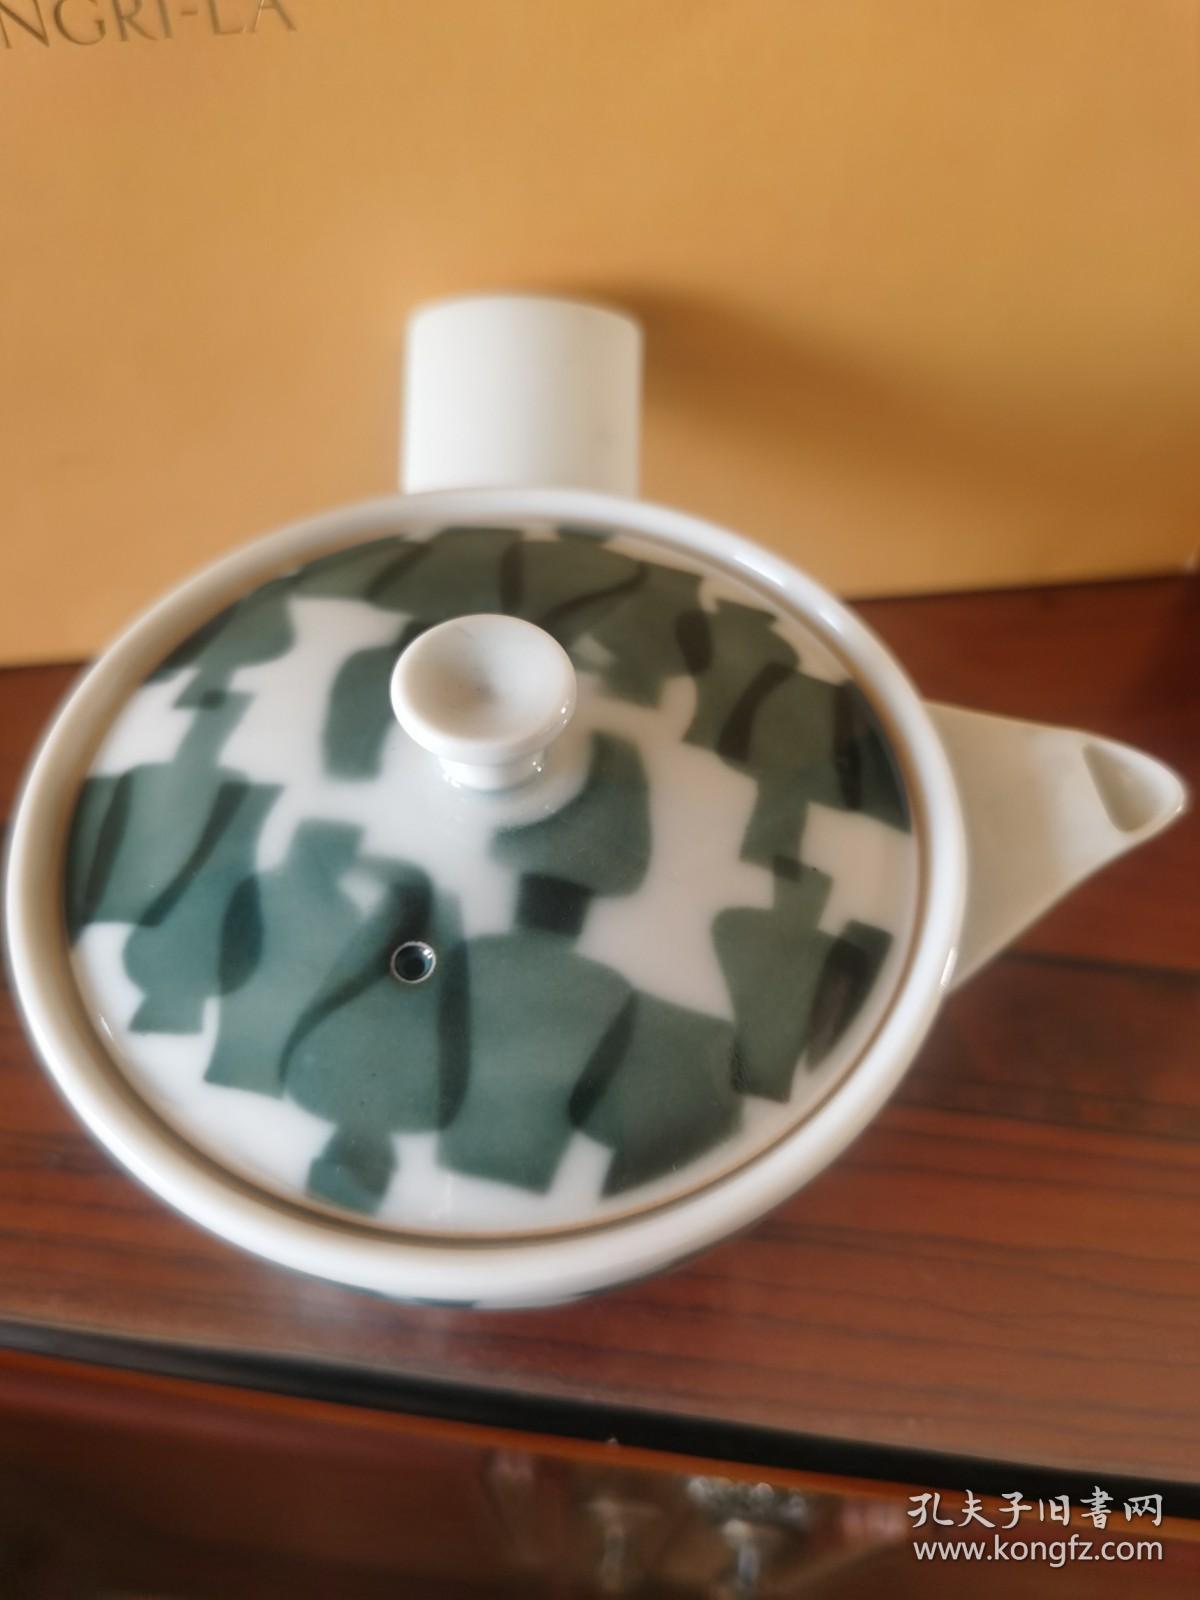 日本茶道具 ：日本白瓷绿釉横手急须壶、虎山款手作侧把壶，瓷质白皙通透，细腻光滑，全新未用过（盖子里有暗刻款虎山）